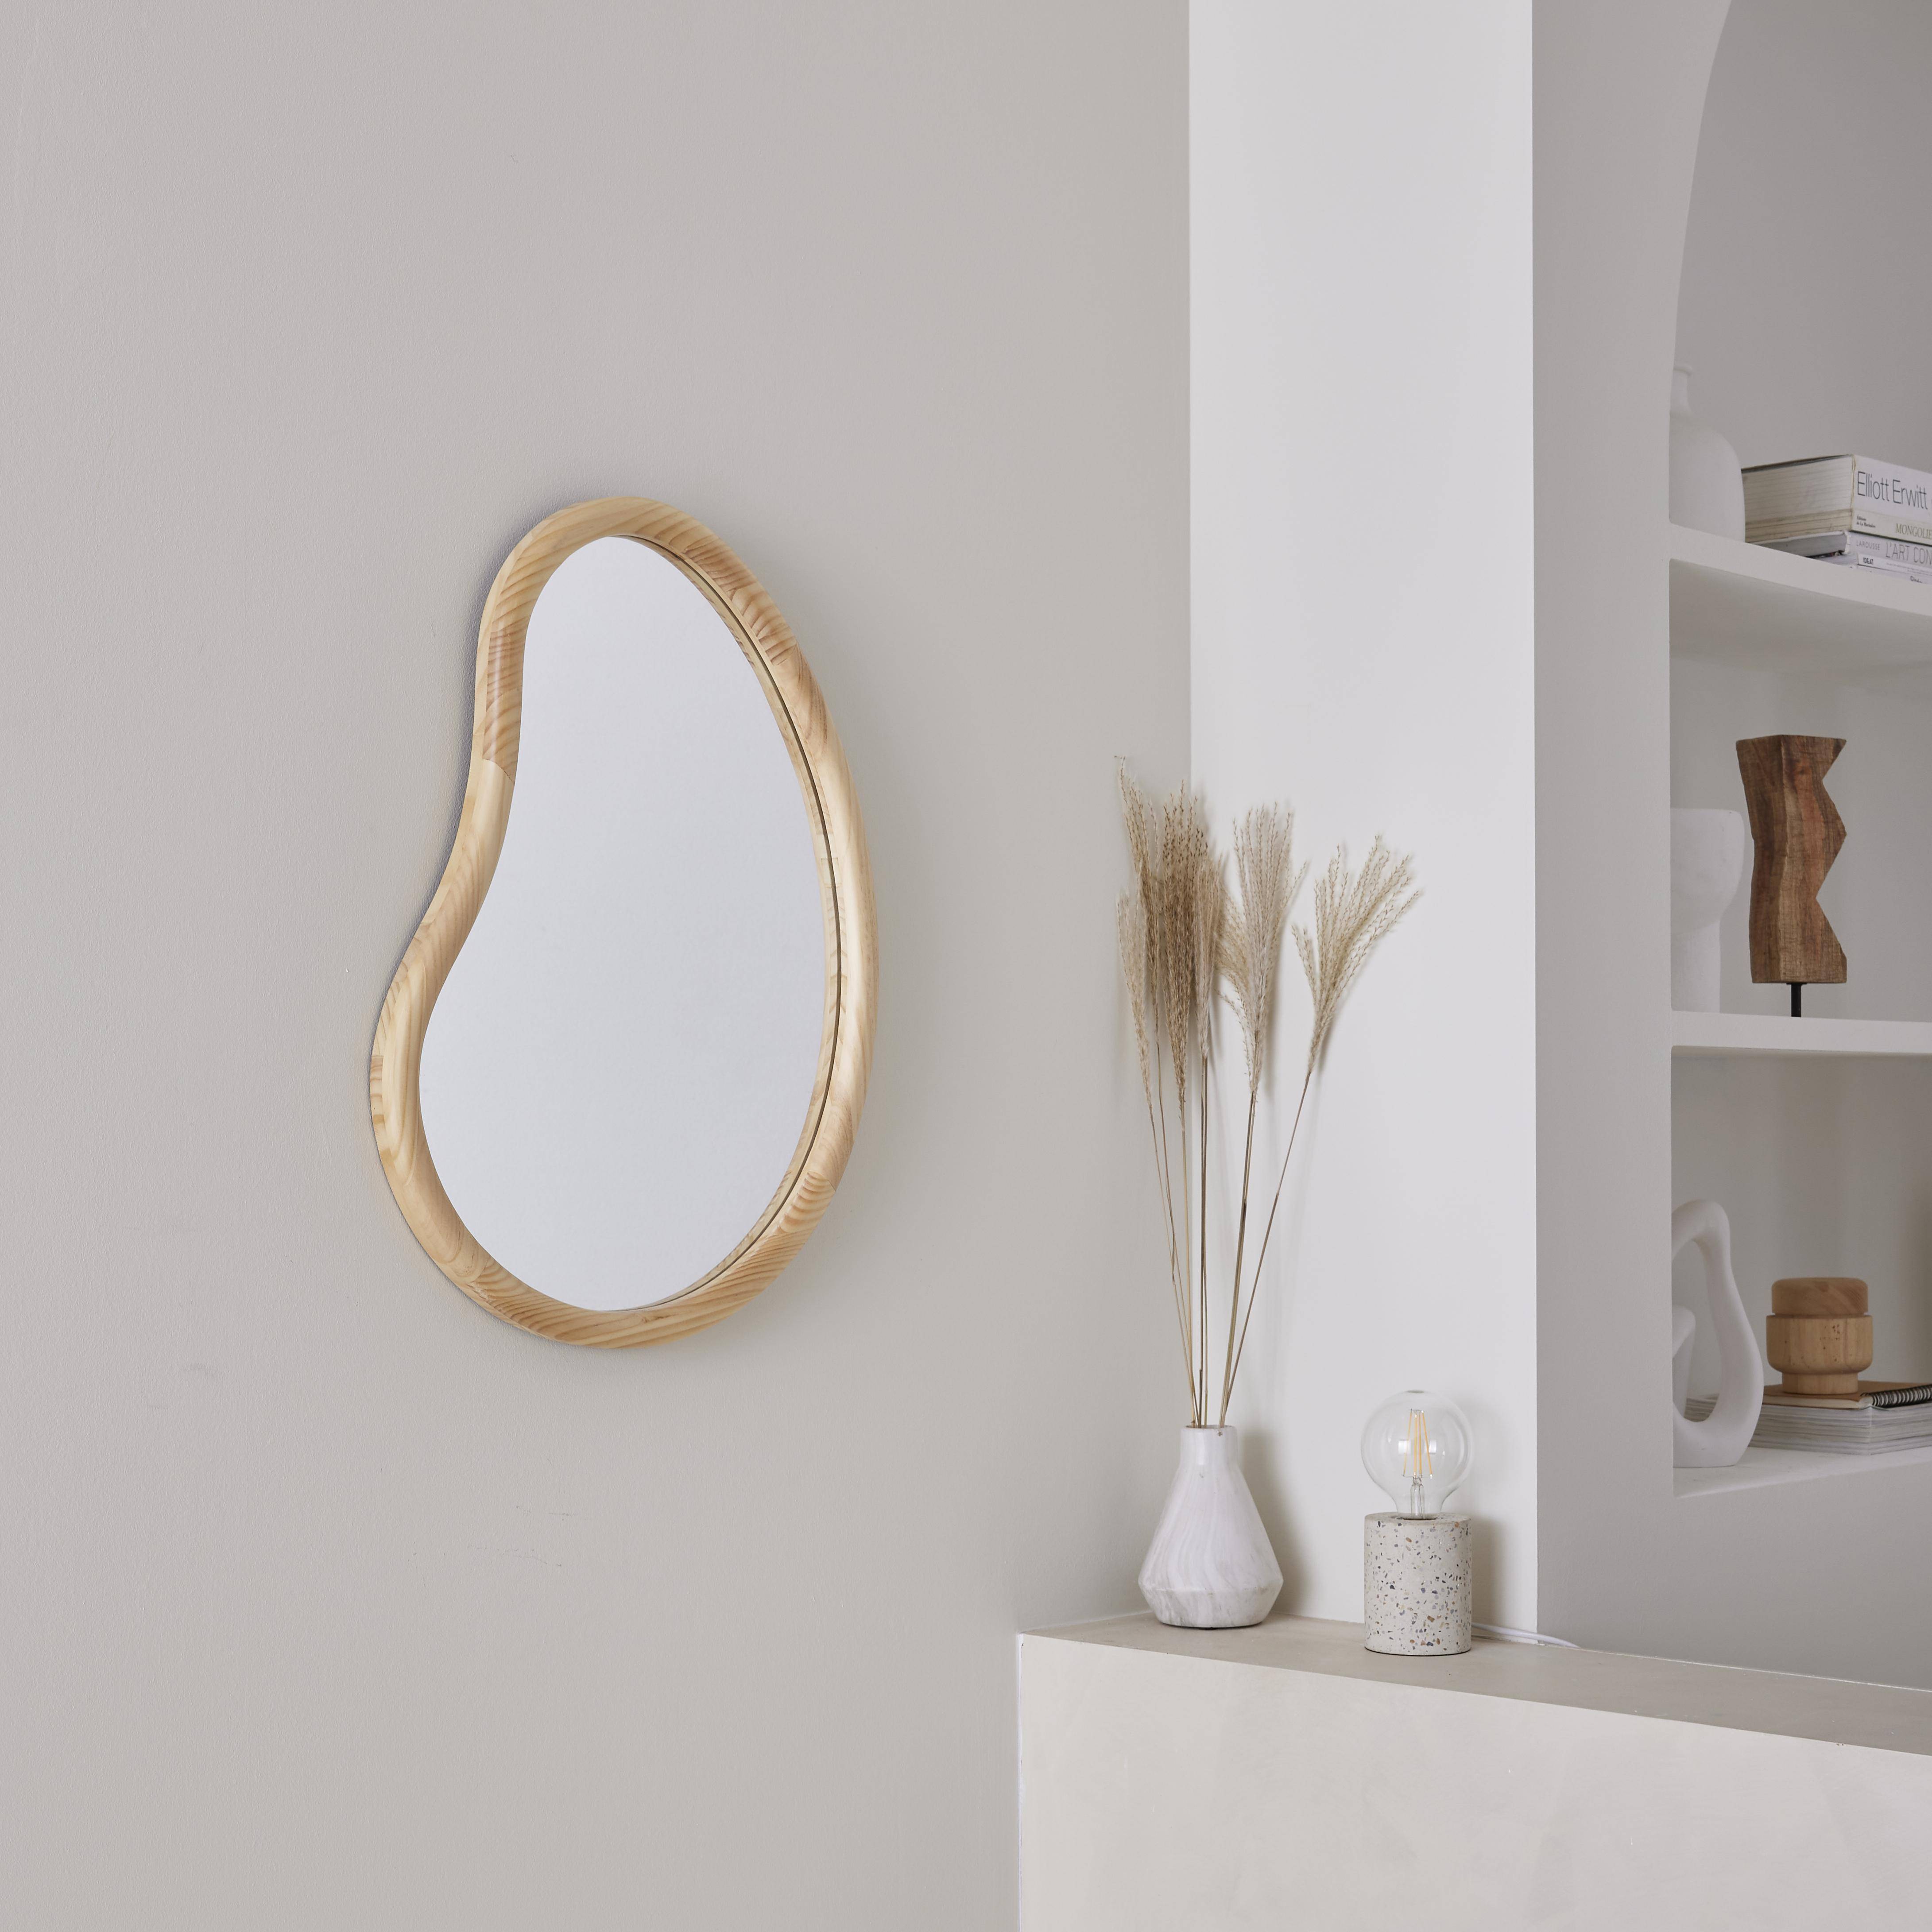 Organischer Spiegel aus Tannenholz 65cm 3cm dick naturfarben ideal für Eingang, Schlafzimmer oder Bad,sweeek,Photo1